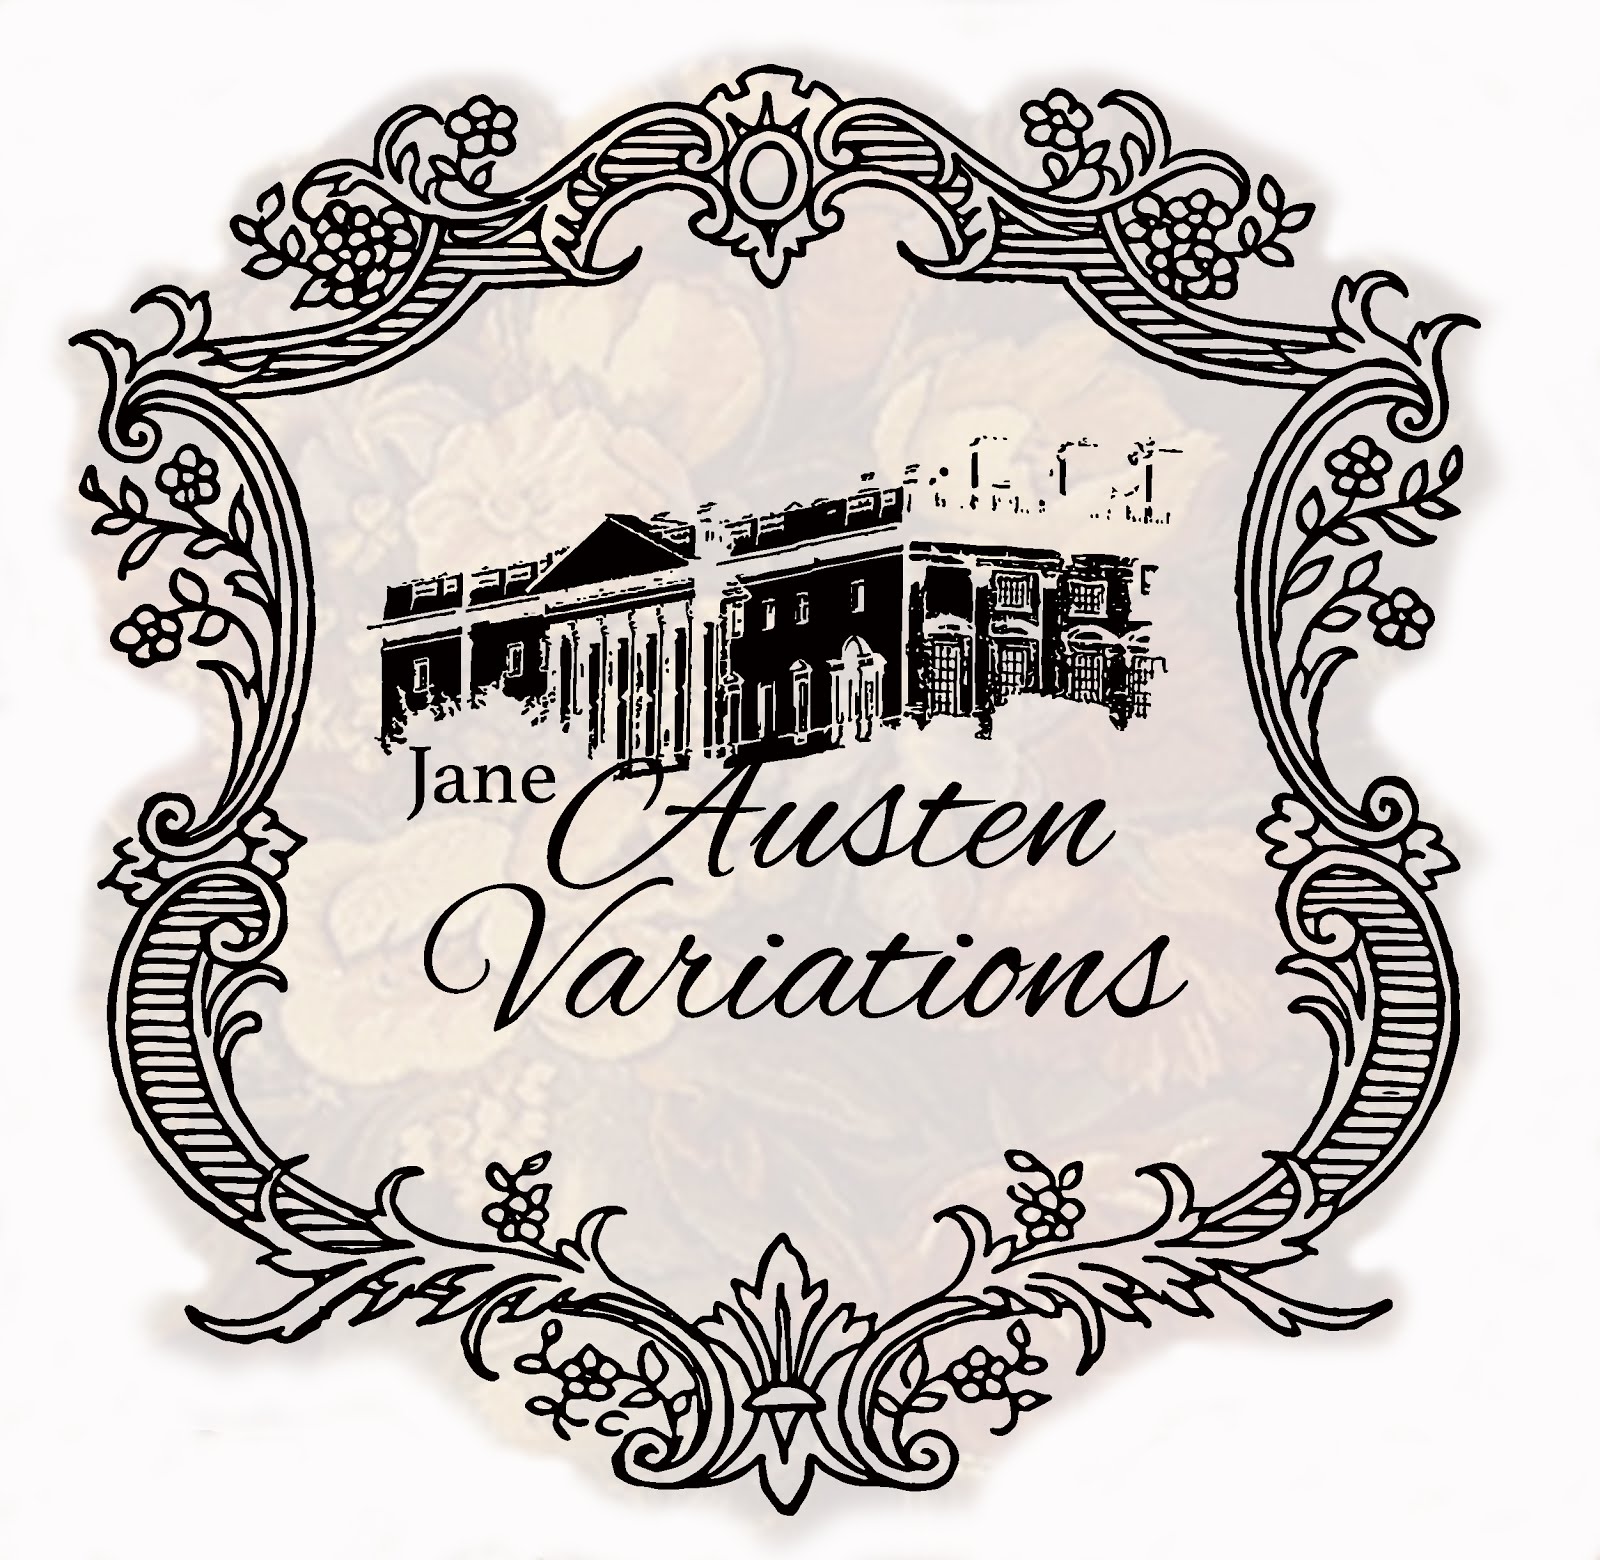 Member of Austen Variations